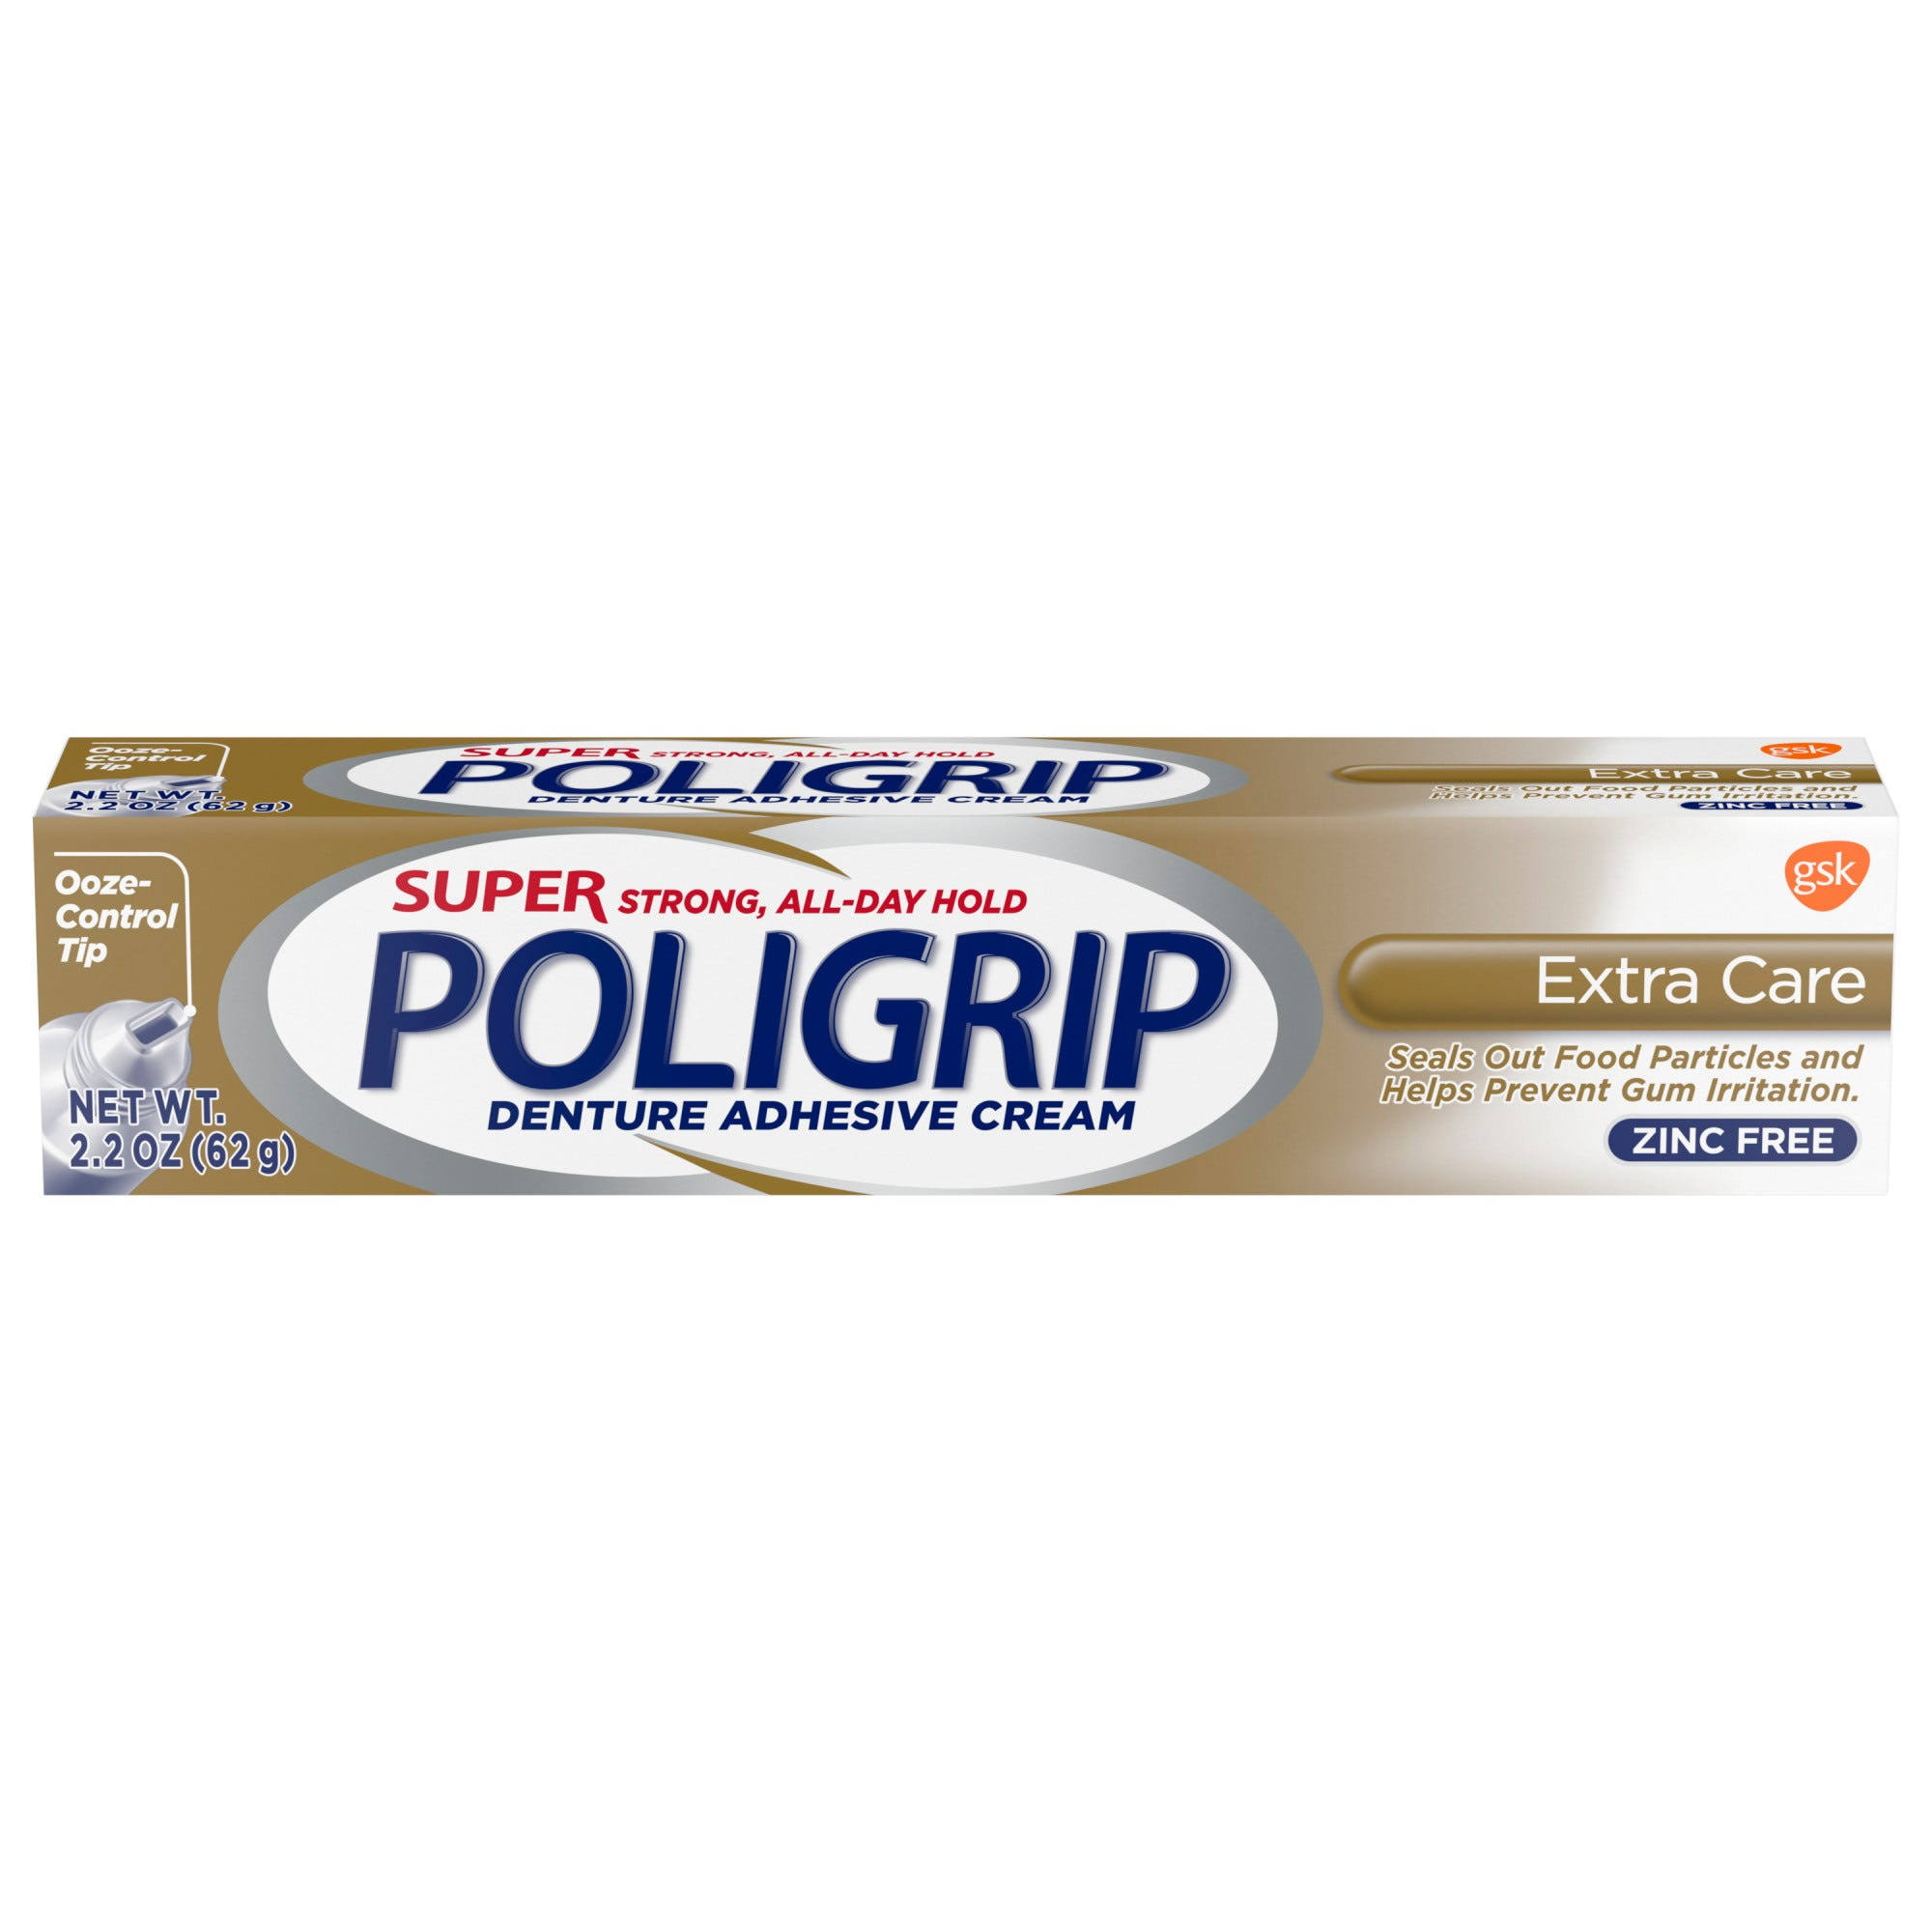 Super Poligrip Denture Adhesive Cream, Extra Care - 2.2 oz tube